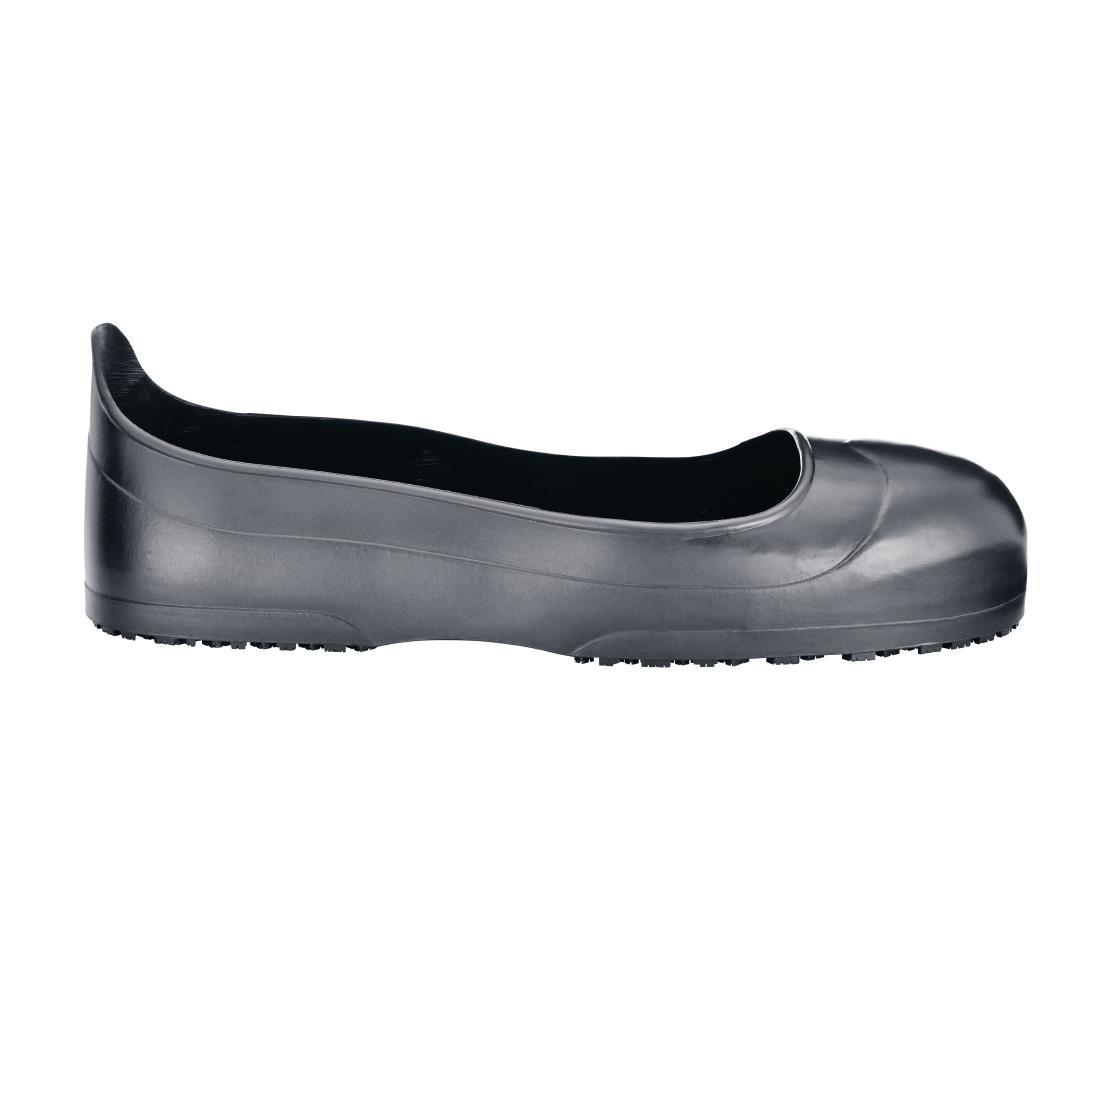 Shoes for Crews Crewguard Overshoes Steel Toe Cap Size LP - BB614-LP  - 1